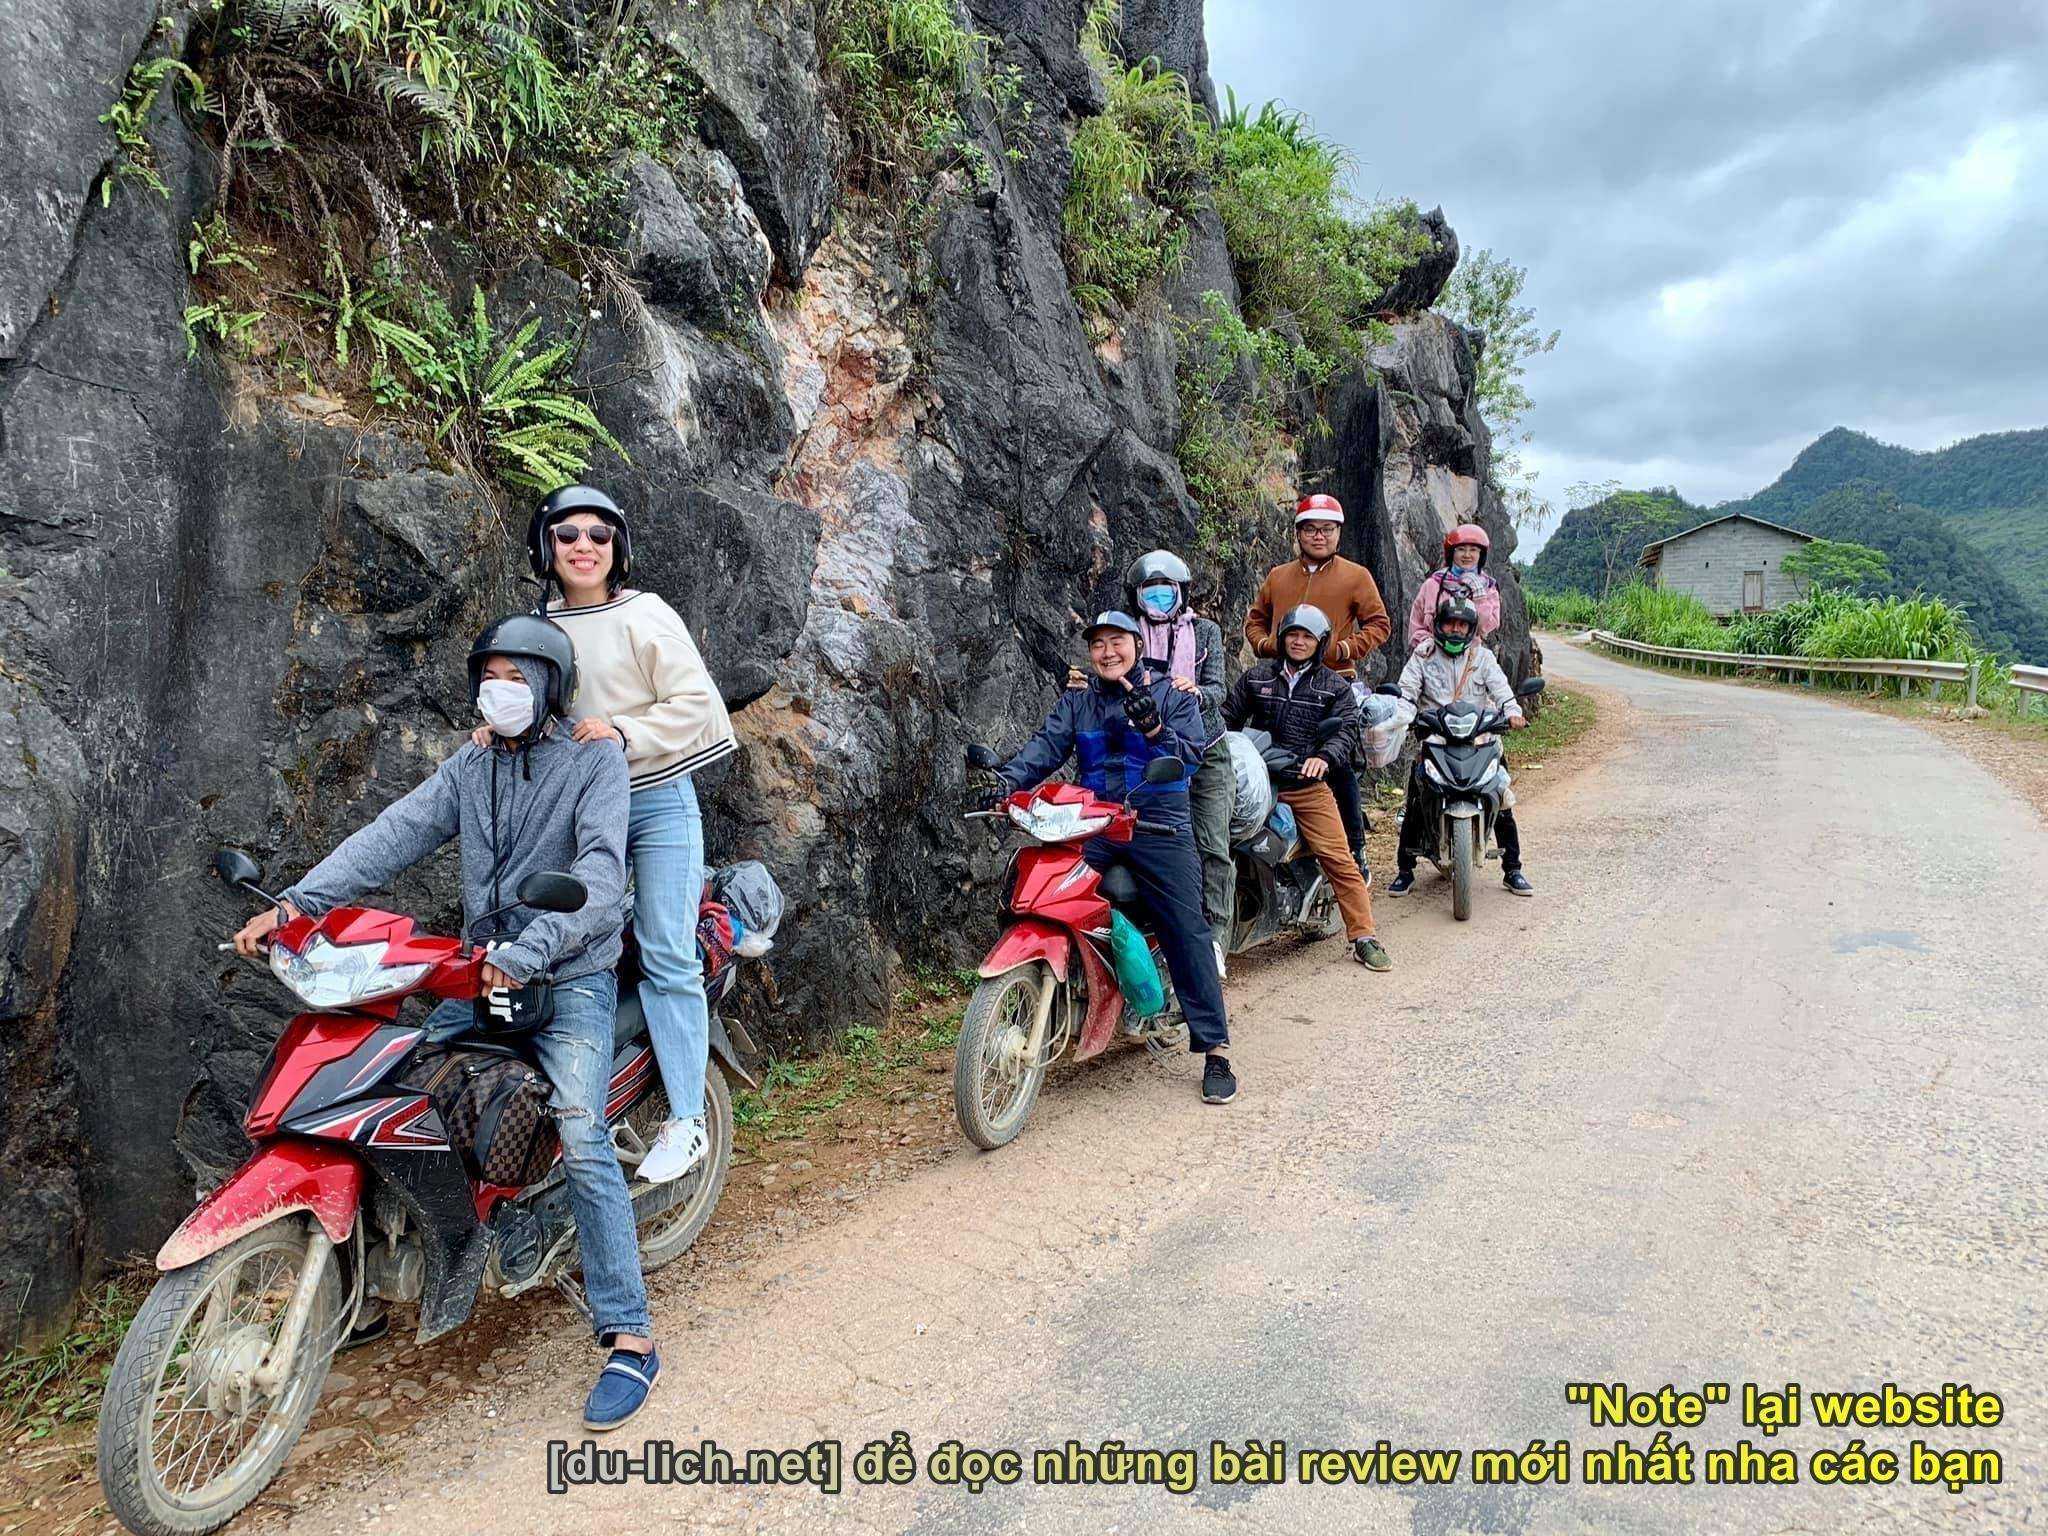 Review kinh nghiệm du lịch Hà Giang: nên thuê xe số để đi cho khỏe, trên đường nên đi thong thả - an toàn mà vui